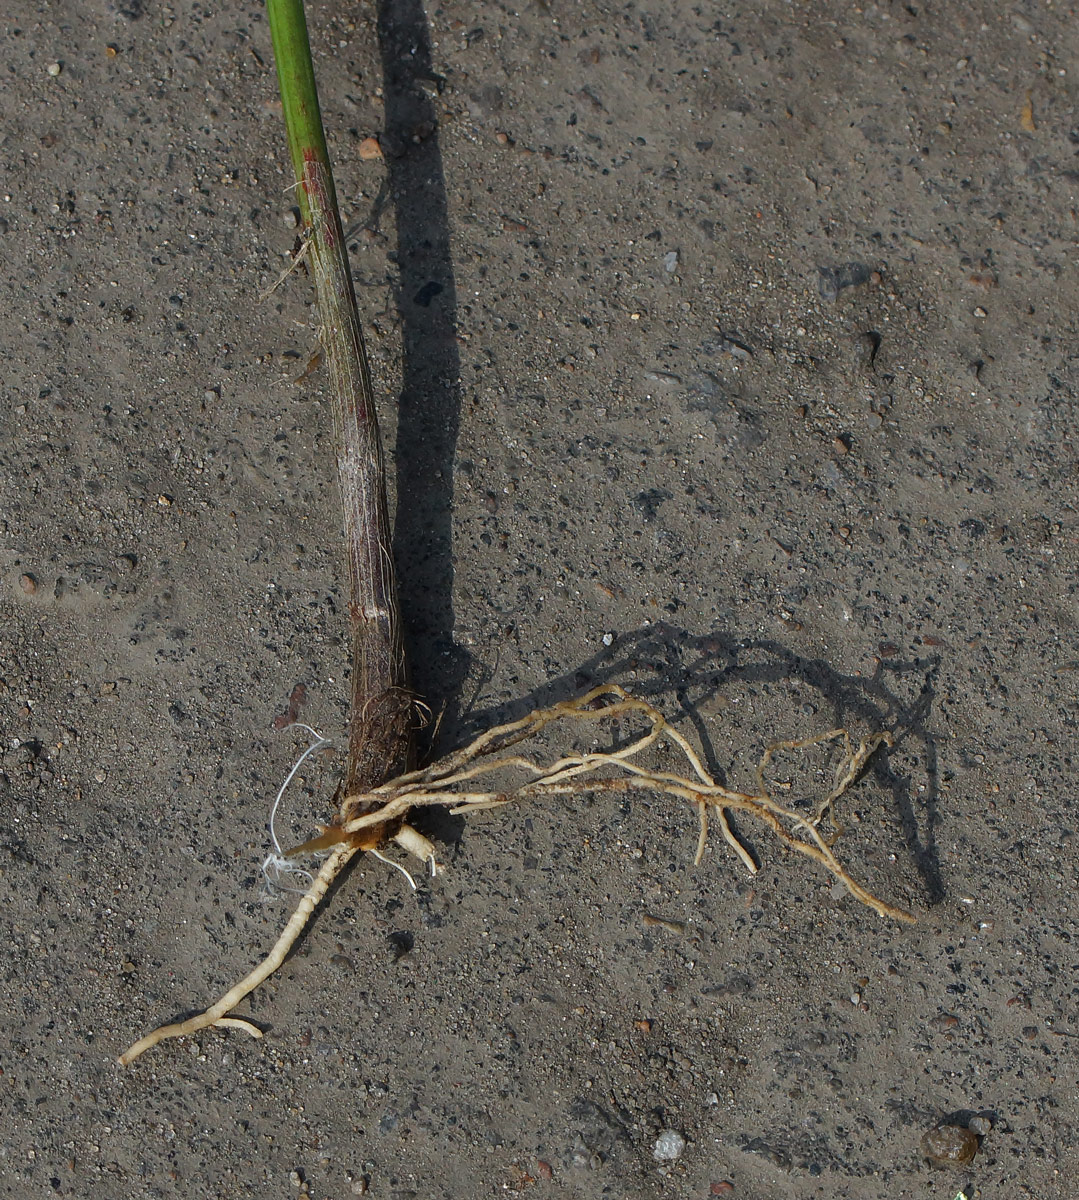 Image of Convallaria majalis specimen.